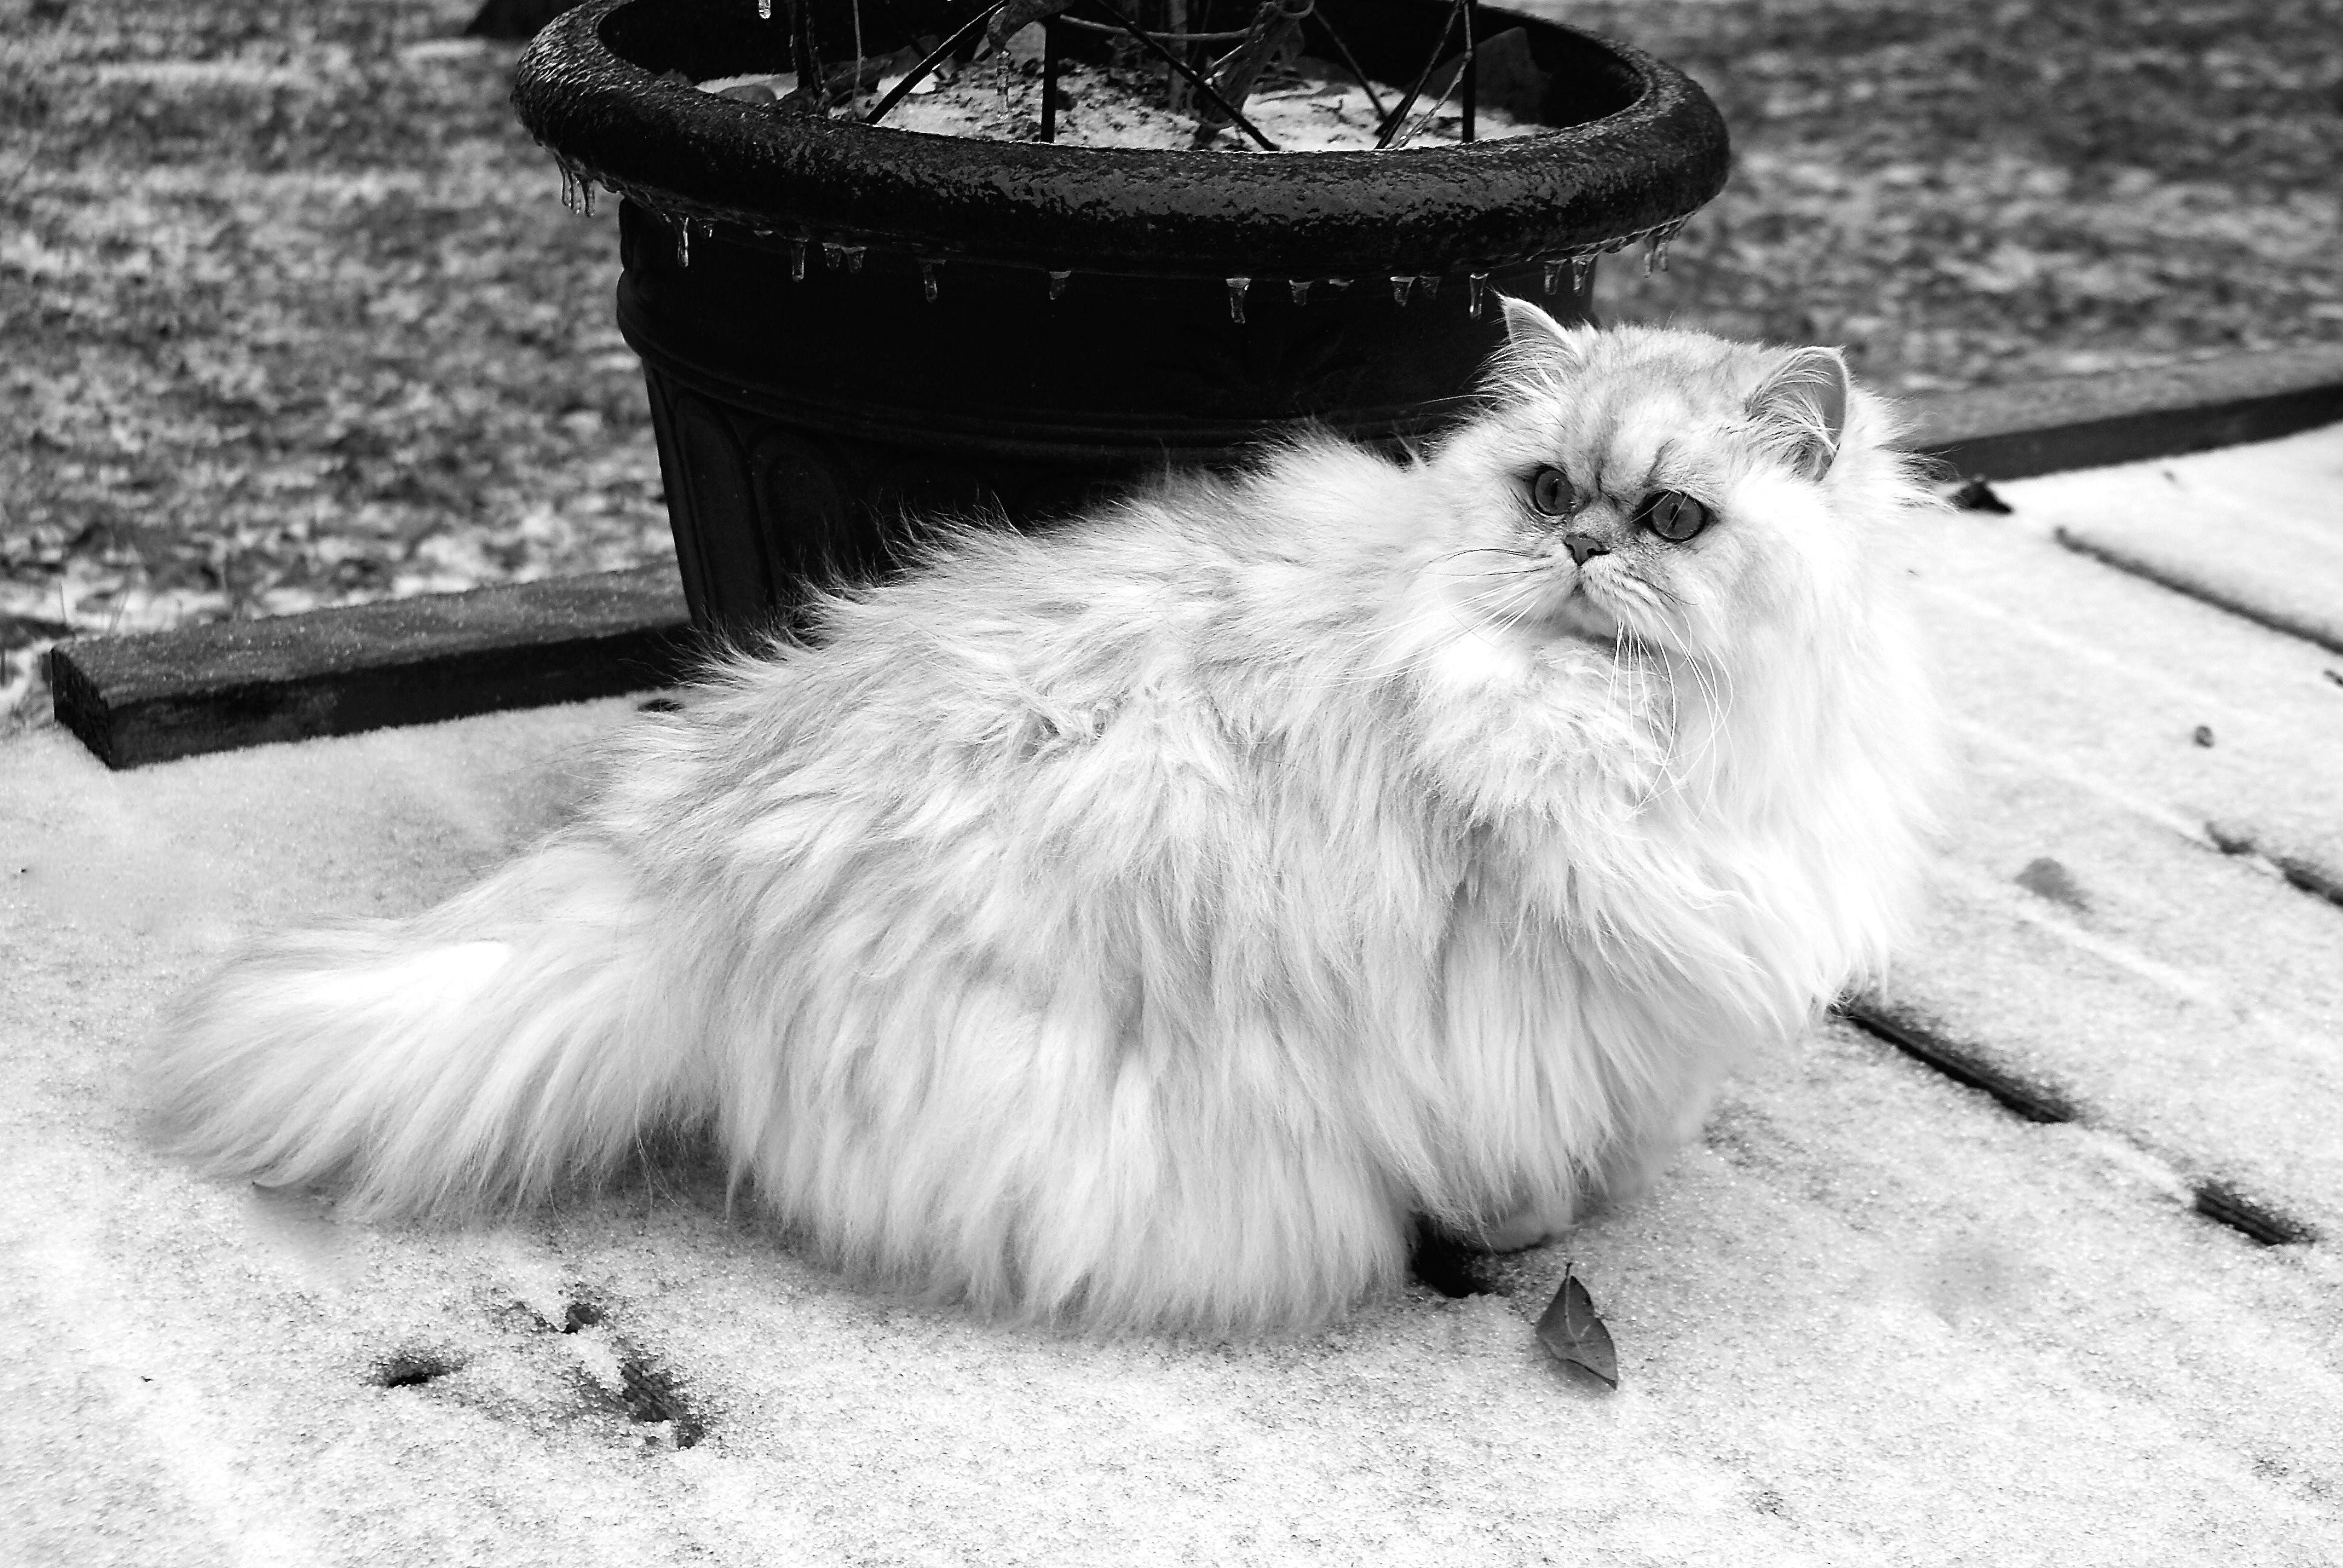 котята персидской шиншиллы фото